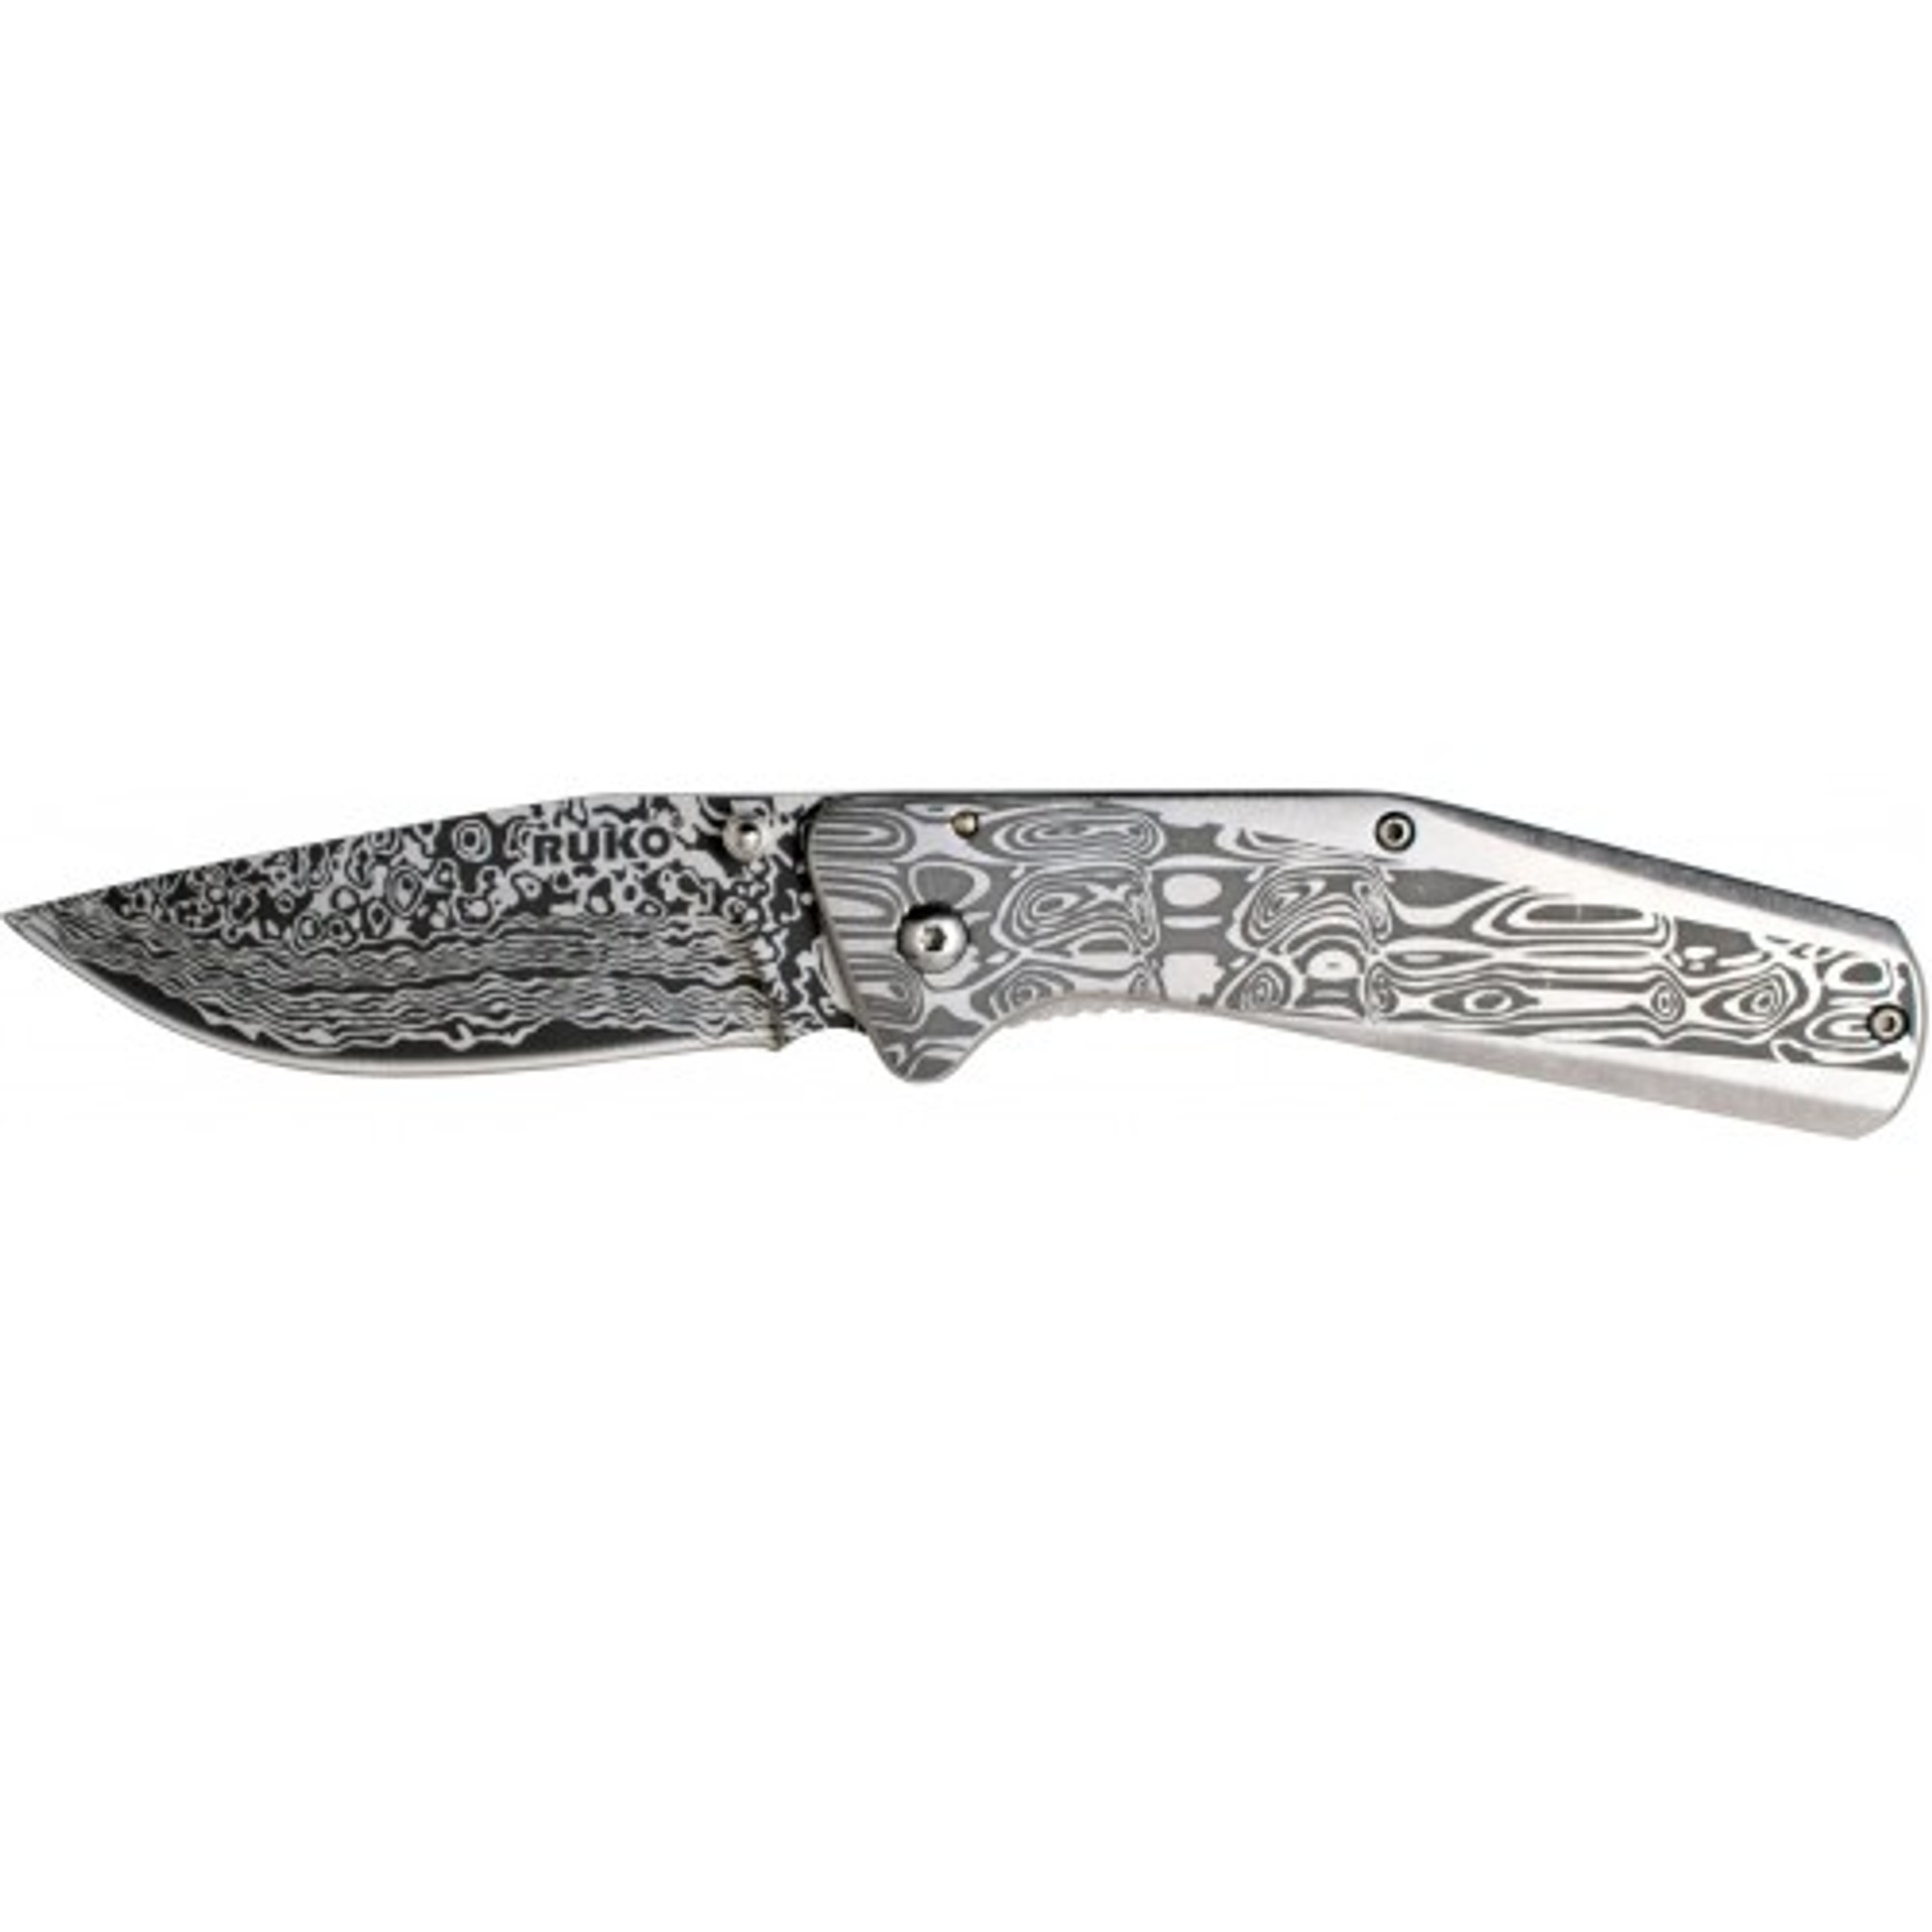 RUKO RUK0177DA, 8CR13MoV, 3.25" Laser Engraved Damascus Folding Blade knife, Stone Washed Finished Handle, boxed